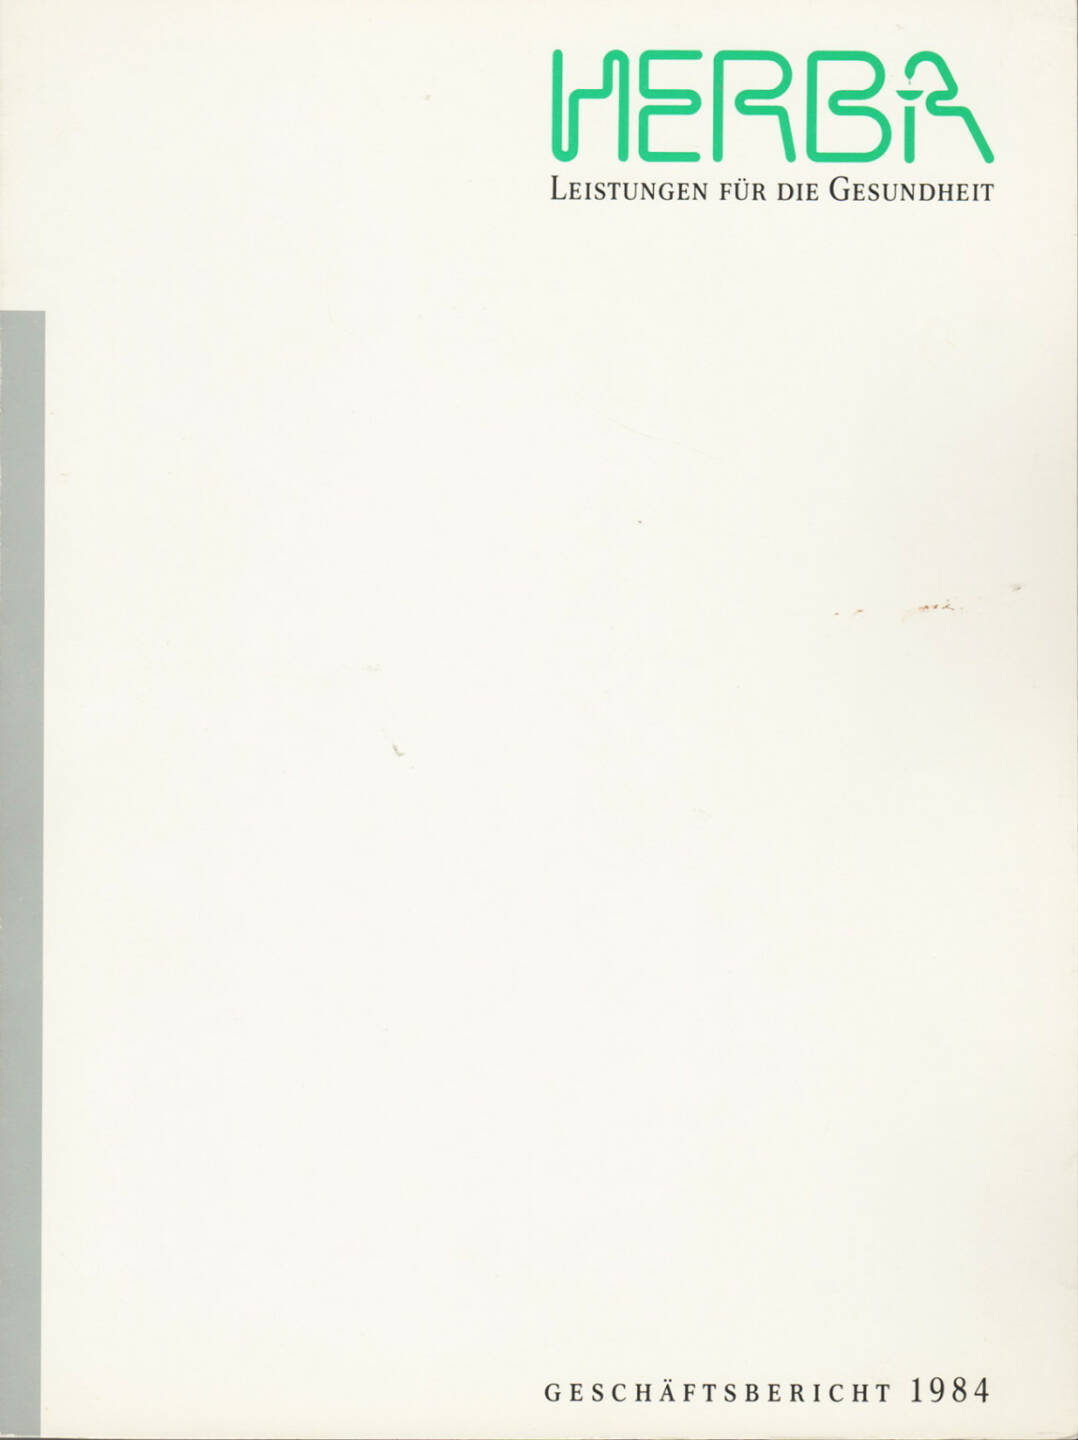 Herba Geschäftsbericht 1984 - http://boerse-social.com/financebooks/show/herba_geschaftsbericht_1984